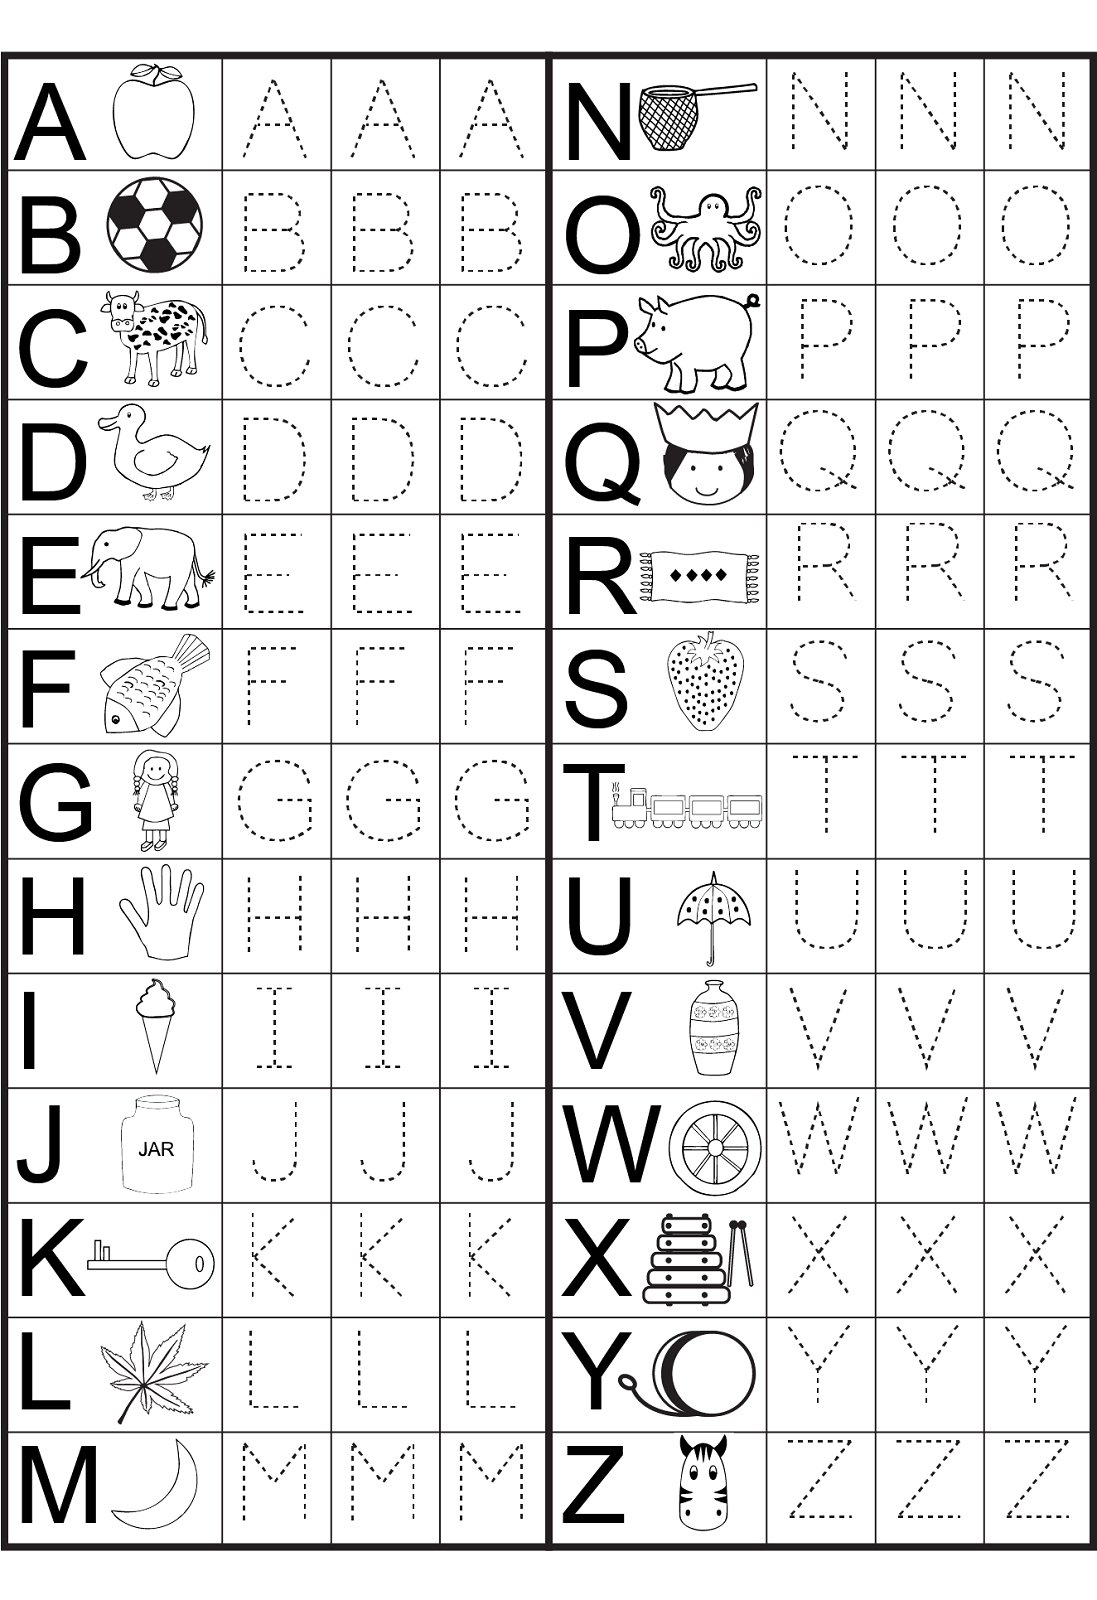 Kindergarten Alphabet Worksheets To Print | Preschool regarding Alphabet Worksheets